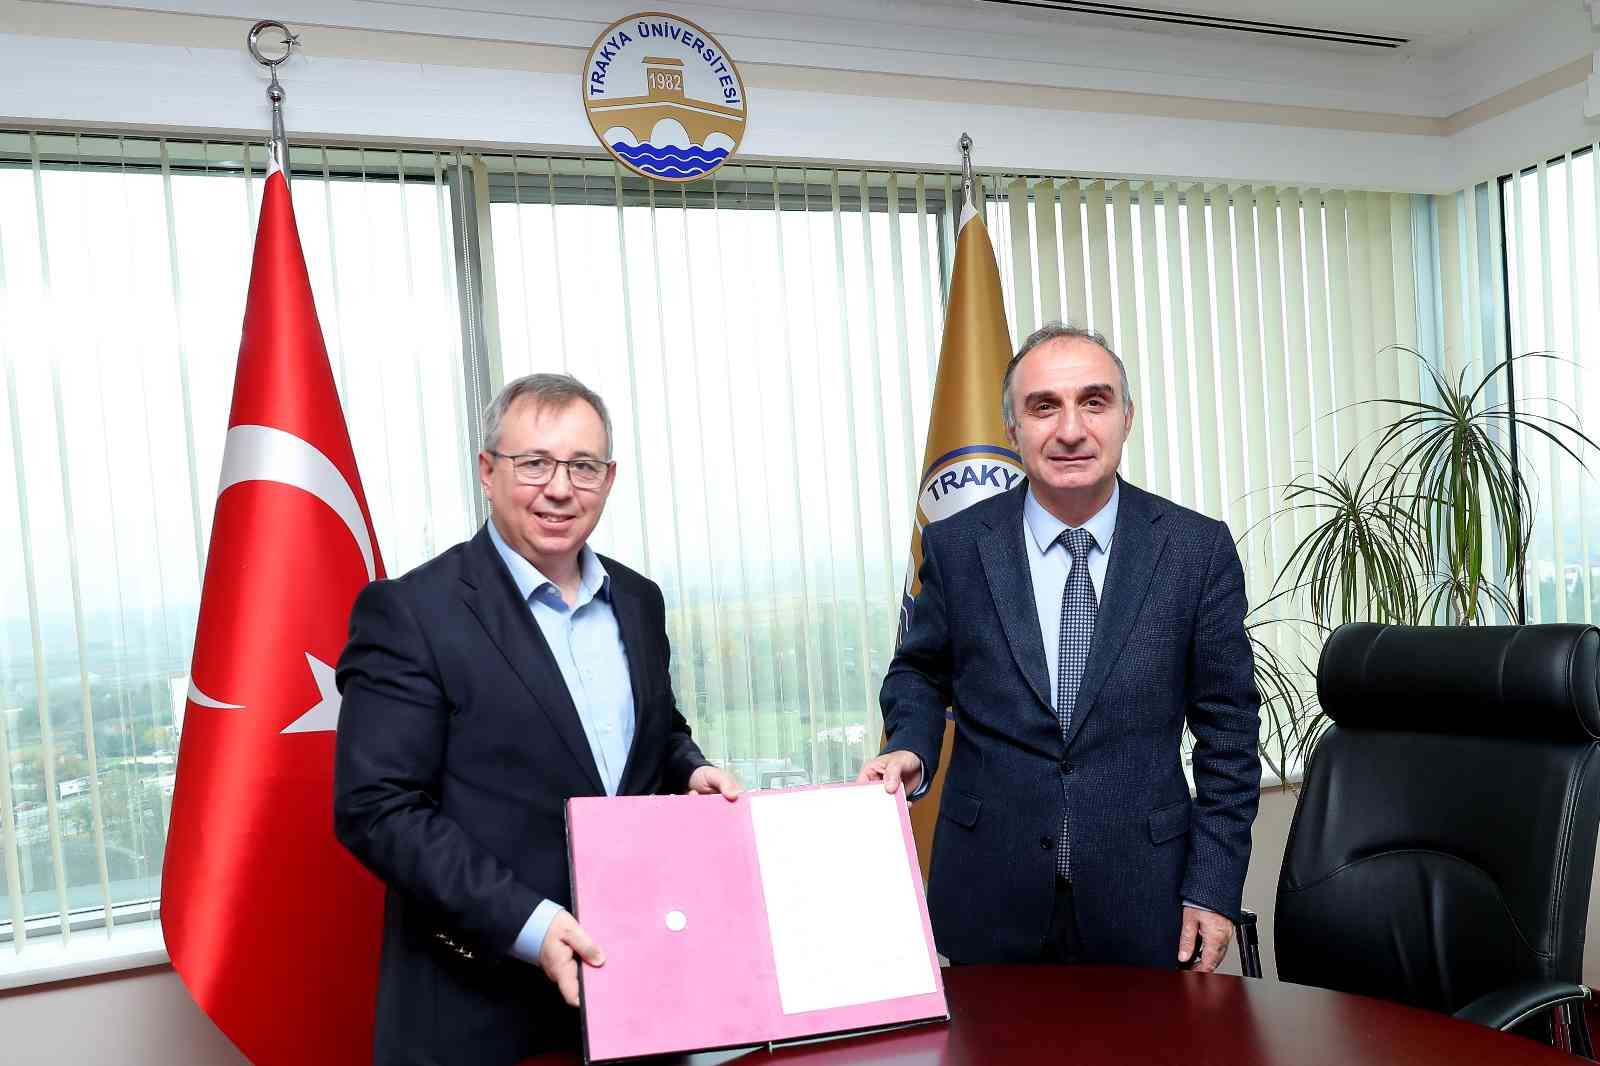 Edirne’de iş birliği protokolü ile üniversitede “Genç Ofis” açılıyor #edirne